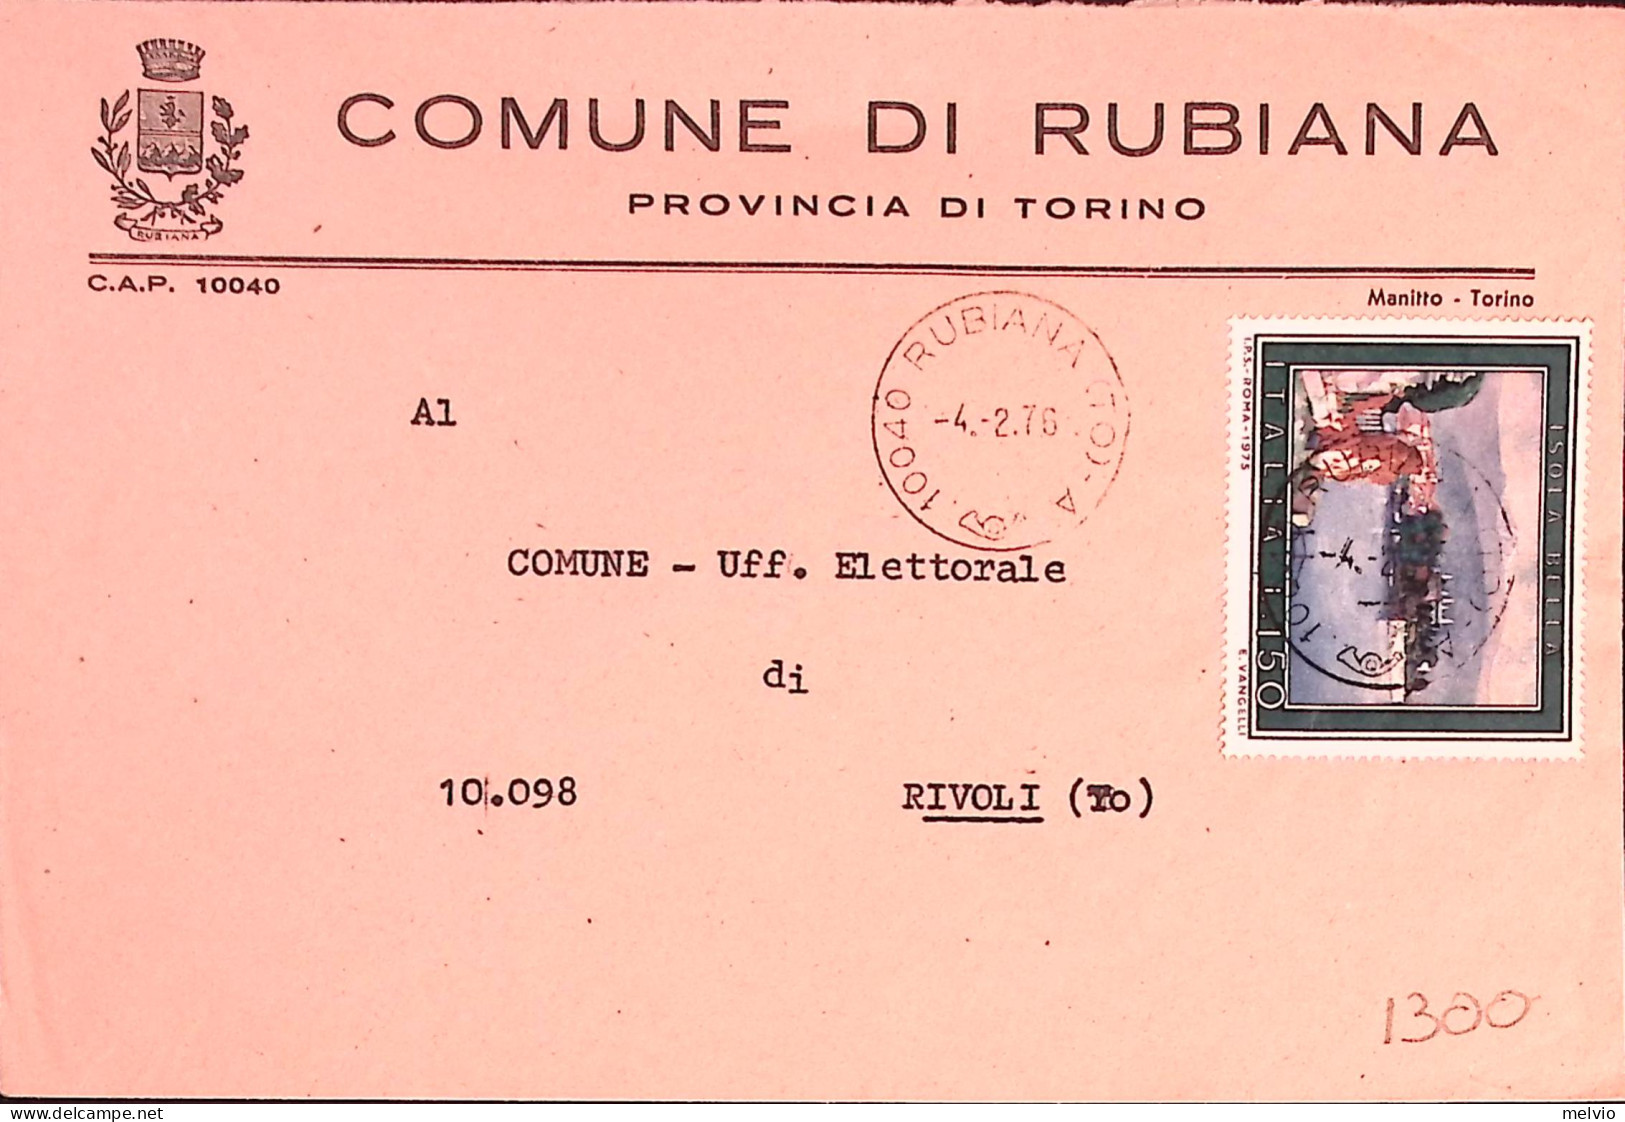 1976-TURISTICA 4 Emissione ISOLA BELLA Lire 150 Isolato Su Busta Rubiana (4.2) - 1971-80: Marcophilie